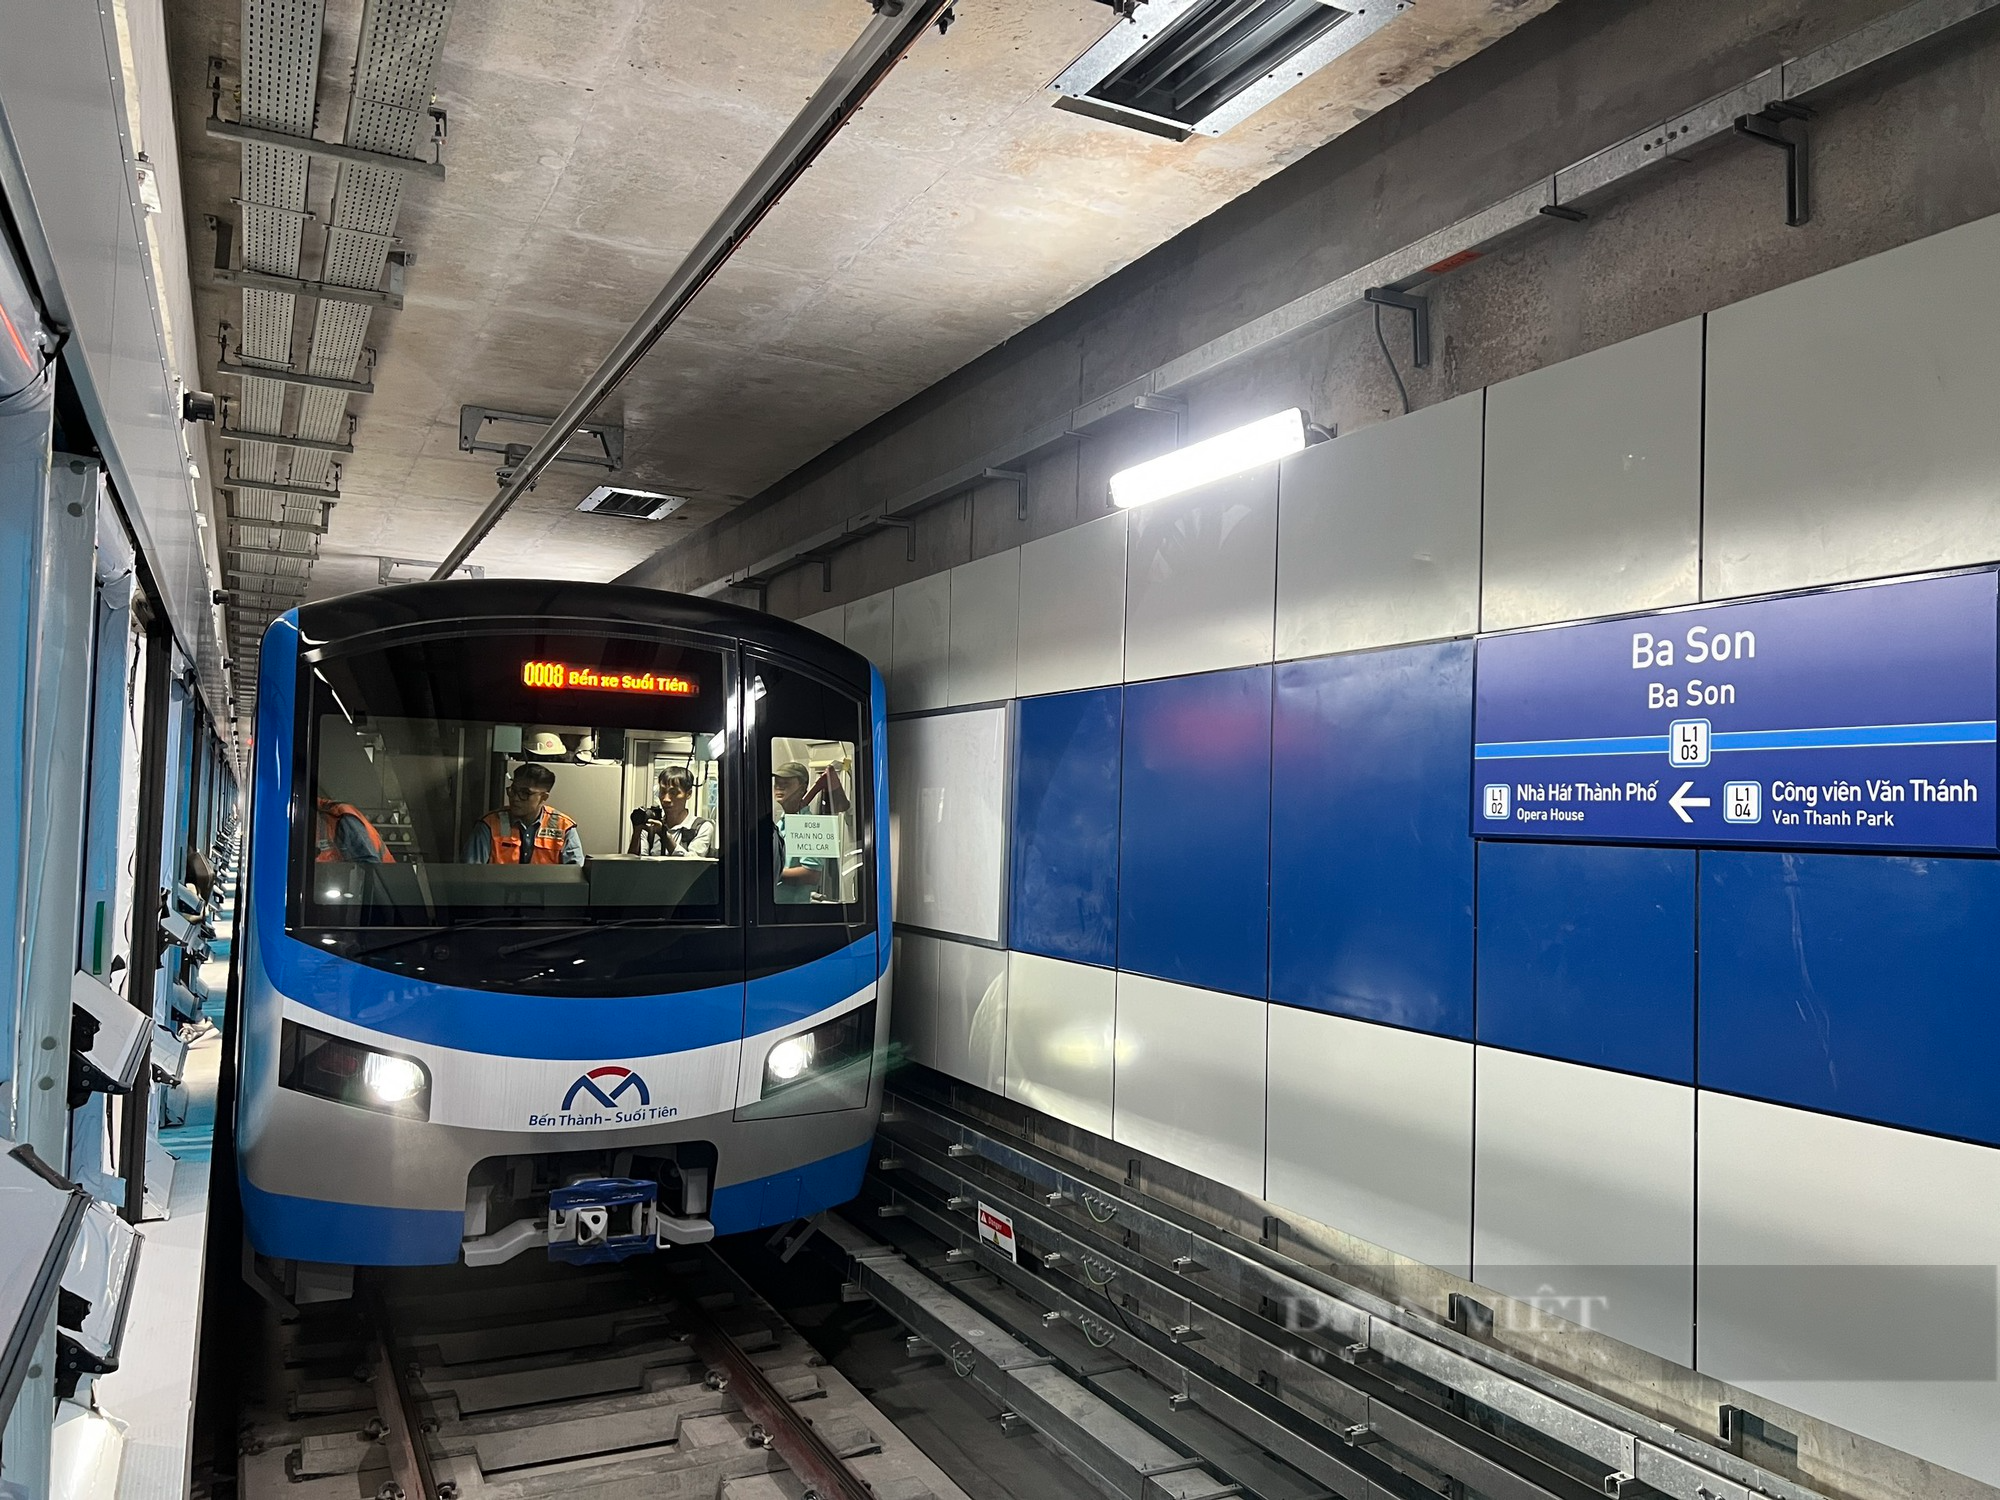 Chiêm ngưỡng đoàn tàu Metro Bến Thành - Suối Tiên chạy thử nghiệm toàn tuyến - Ảnh 5.